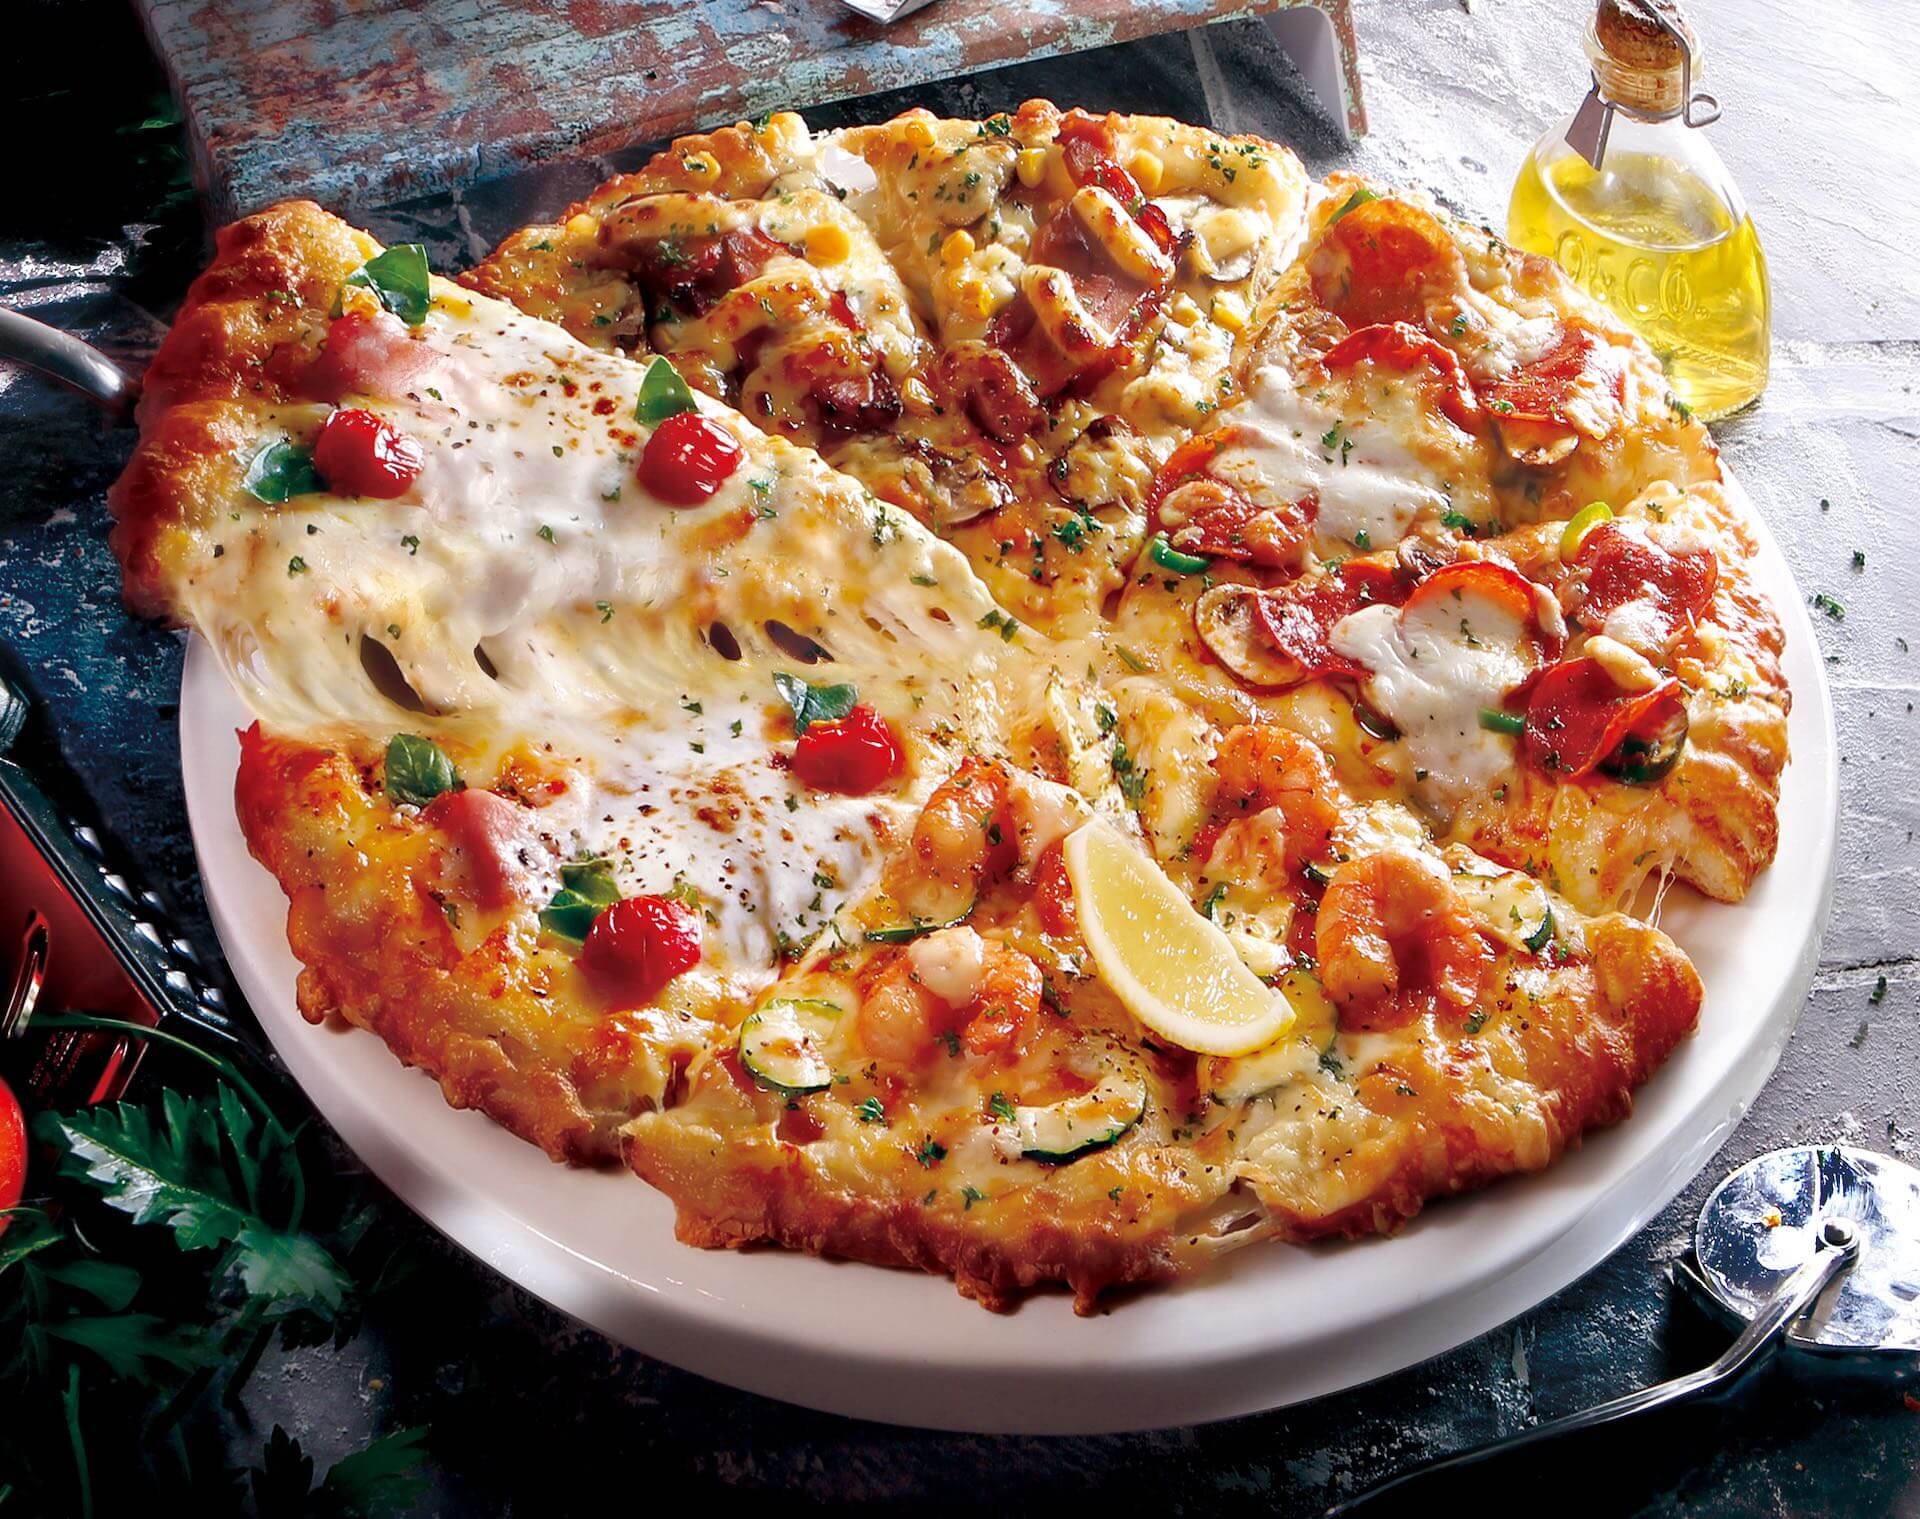 おうちでピザ充しよう！ピザーラから春の大人気新作ピザとサイドメニューがセットになった『ファミリーセット』が登場 gourmet200507_pizzala_02